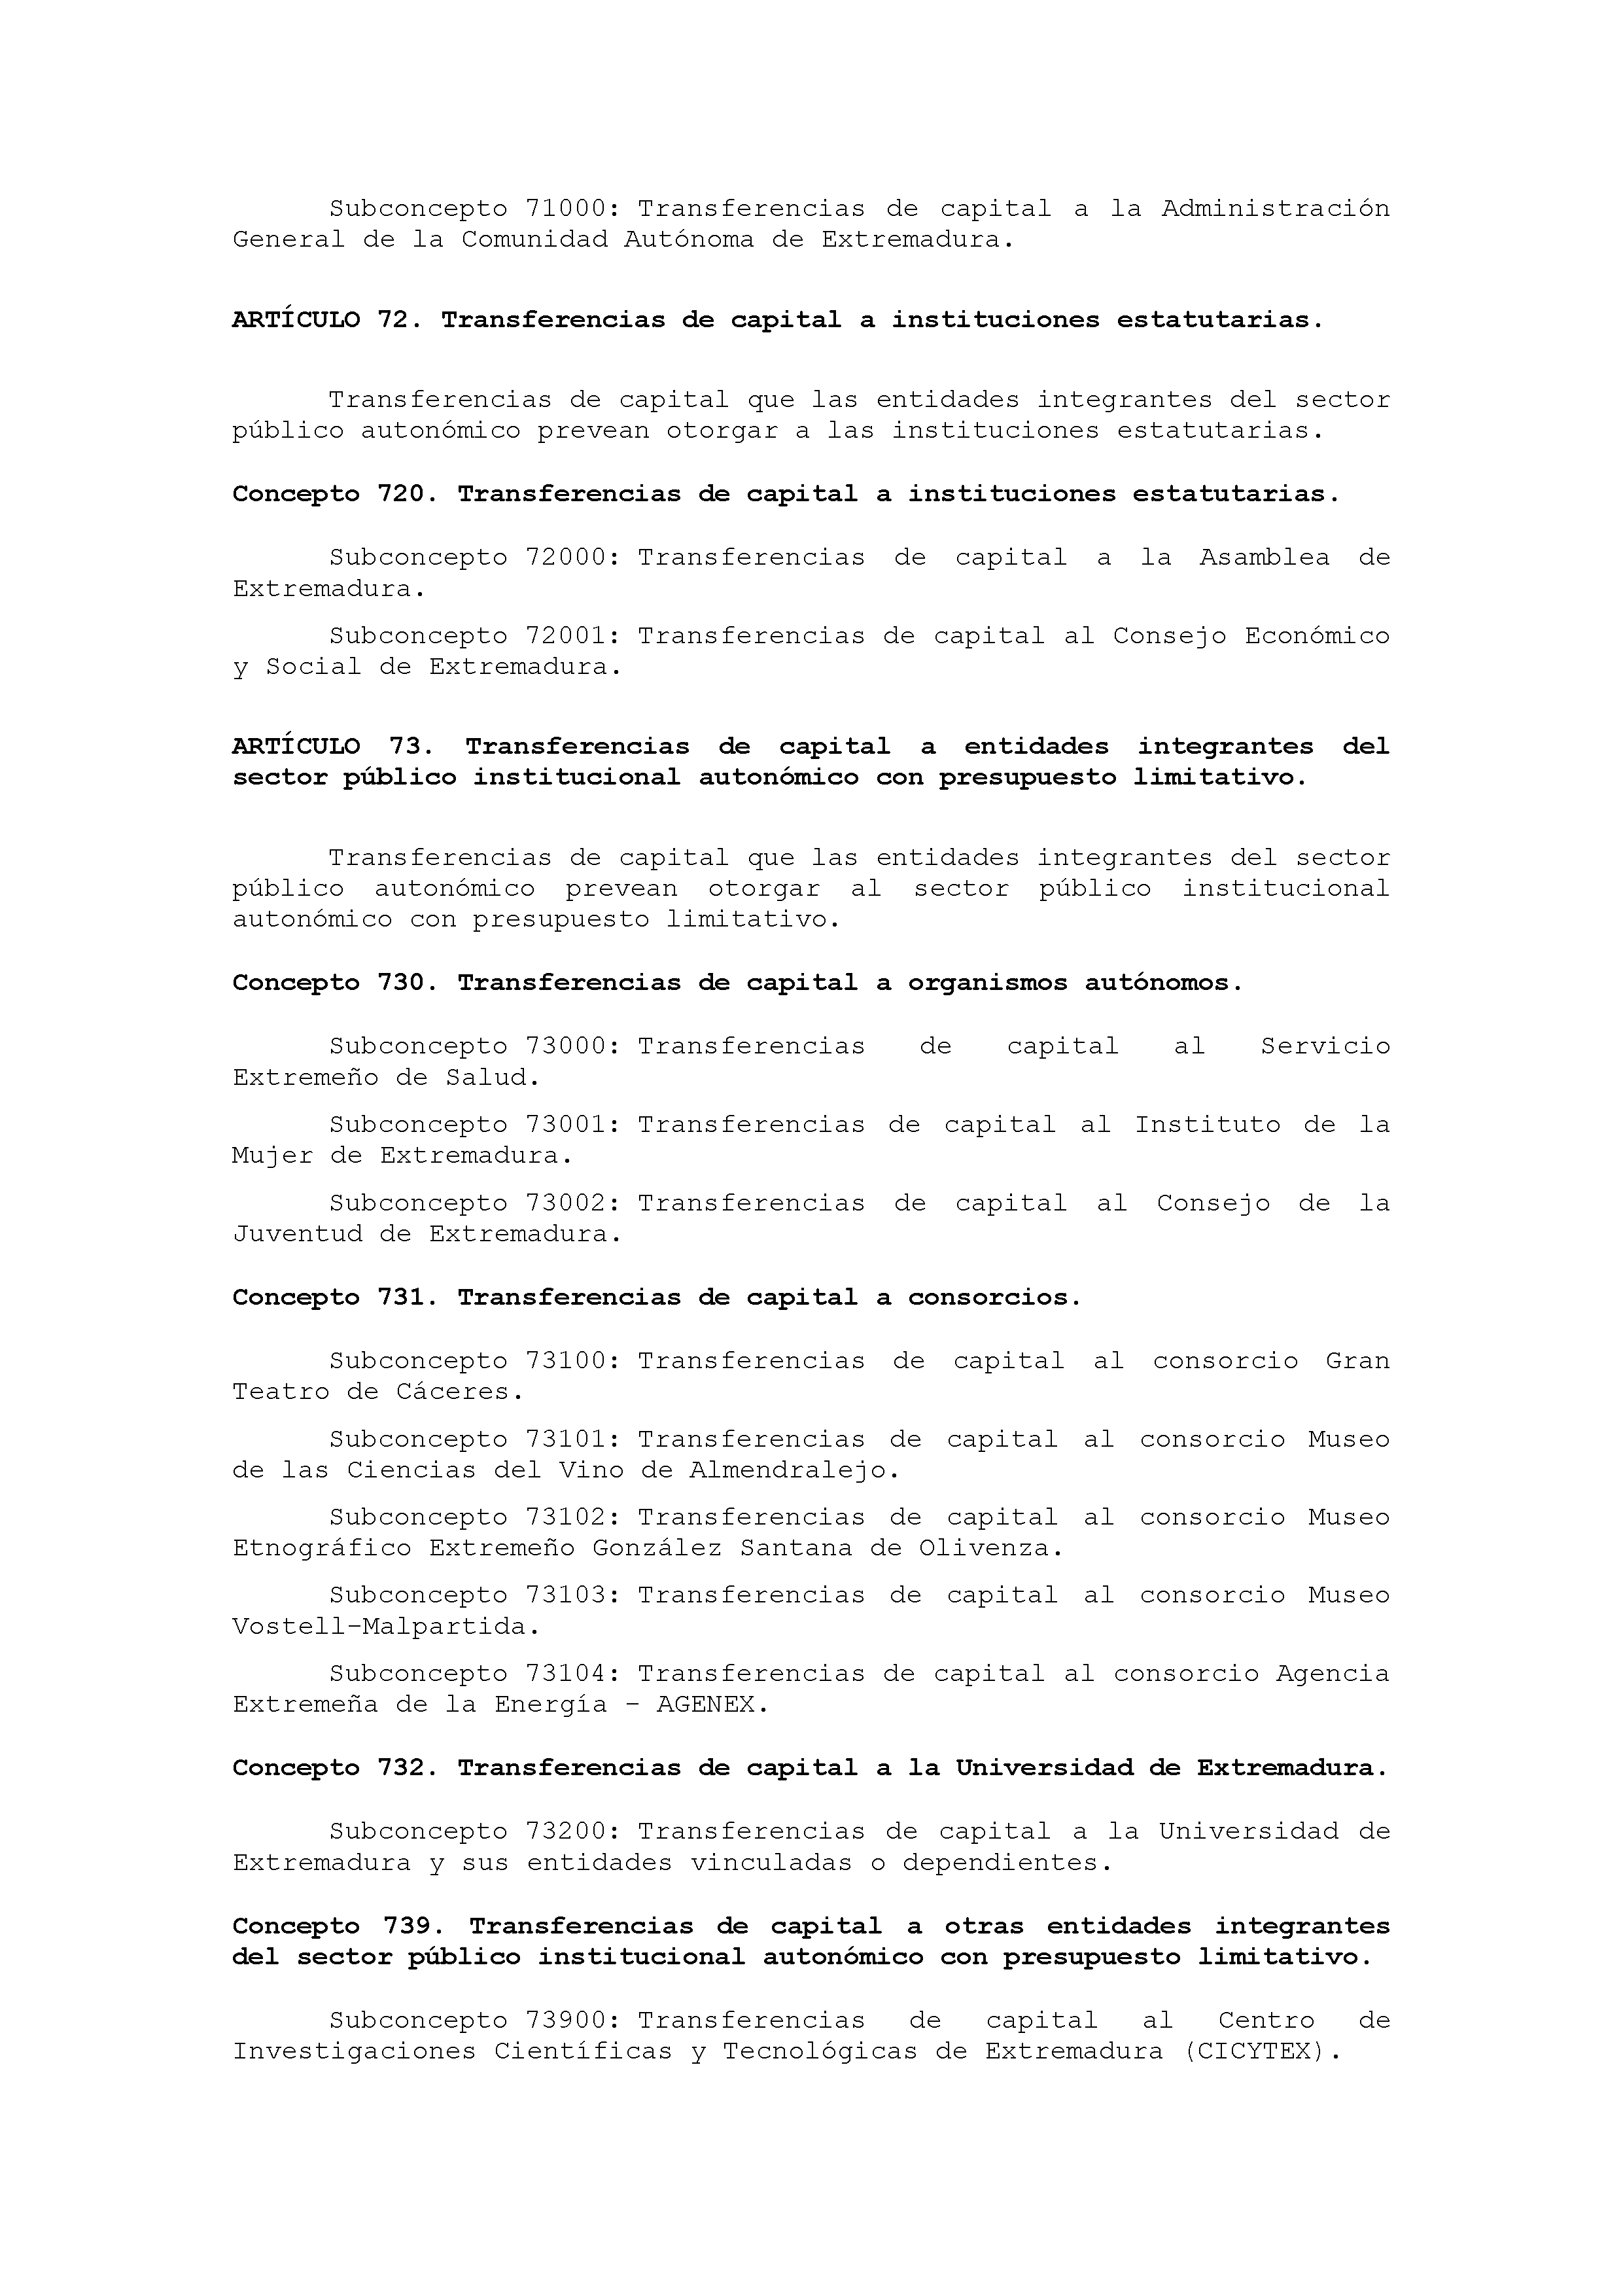 ANEXO IX CÓDIGO DE LA CLASIFICACIÓN ECONÓMICA DE LOS GASTOS PÚBLICOS Pag 41